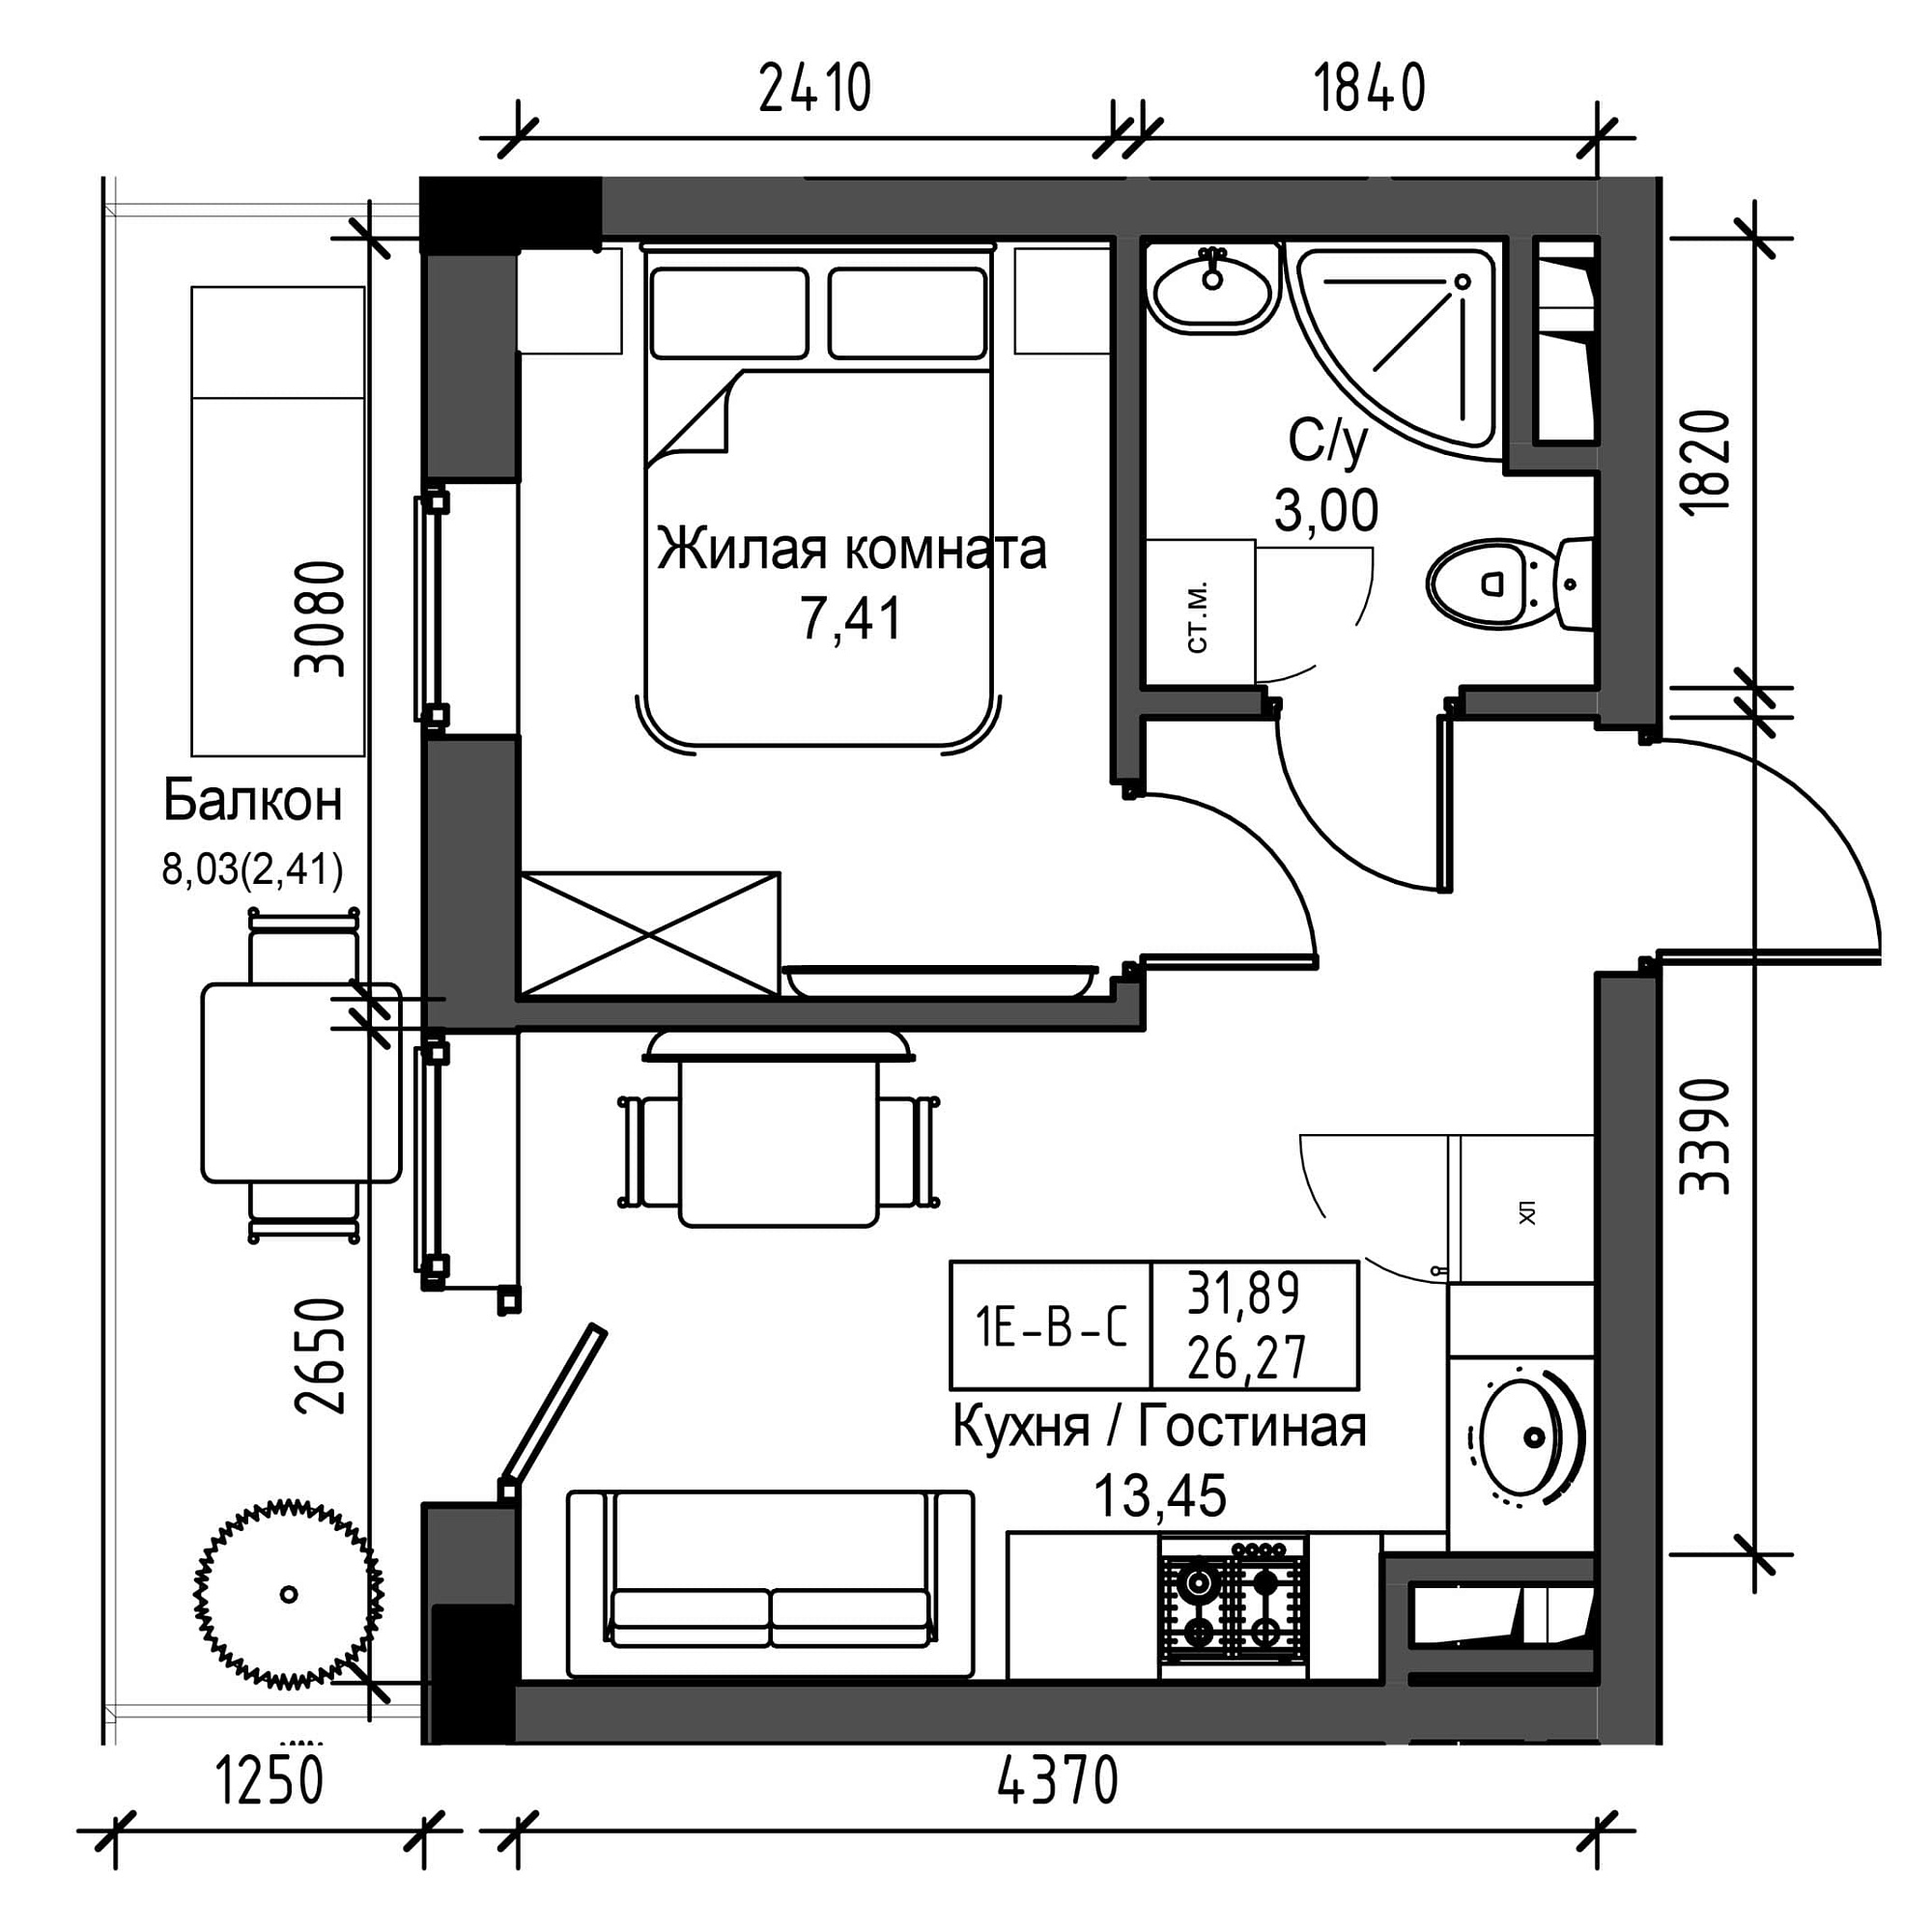 Планировка 1-к квартира площей 26.27м2, UM-001-07/0015.